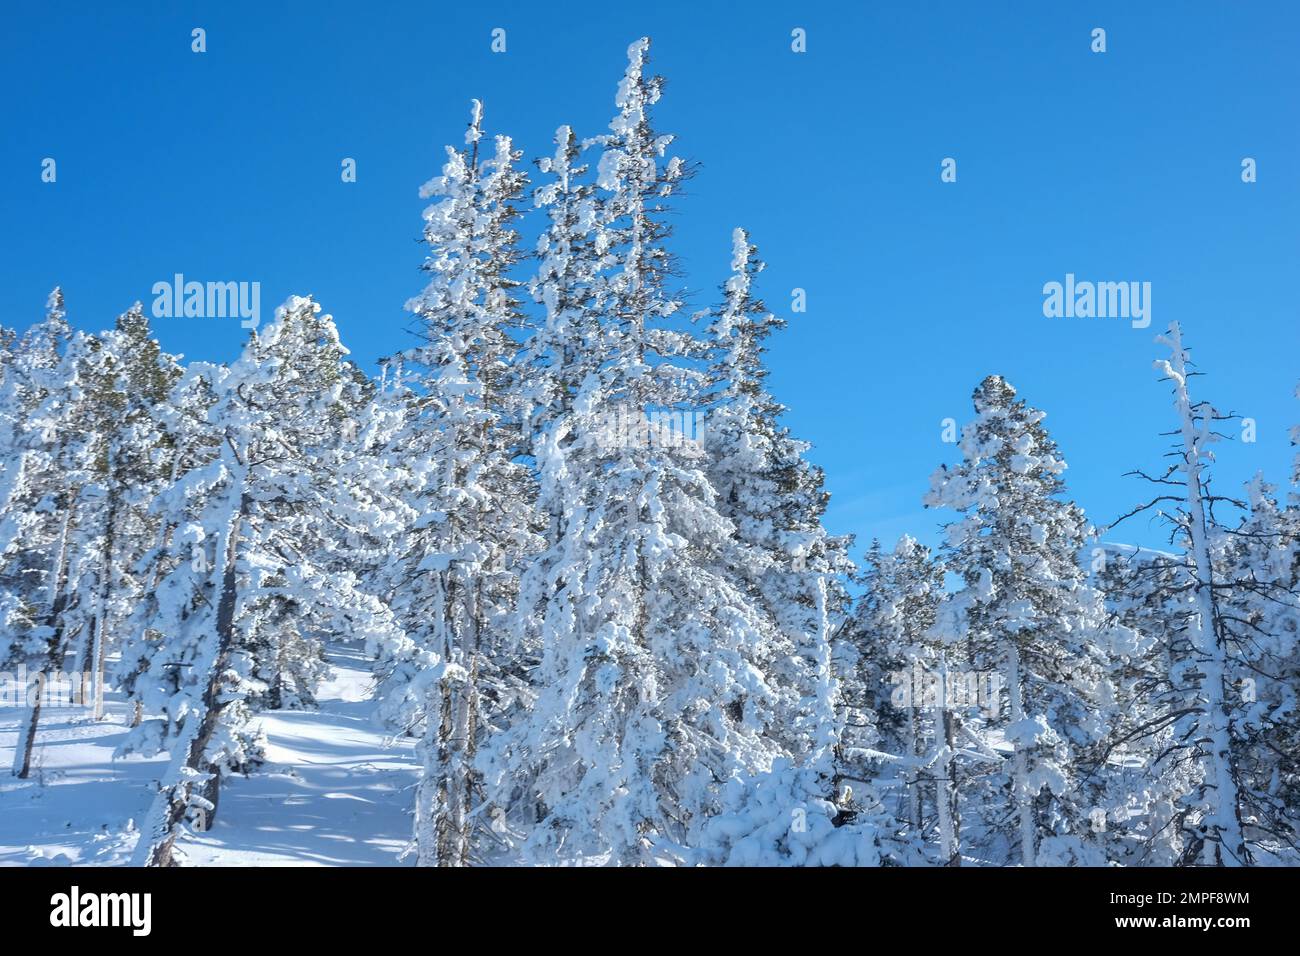 Michael Bunel / le Pictorium - Sci nelle Alpi - 8/1/2016 - Savoia / Francia / la plagne - Abete innevato sotto un cielo blu. 29 gennaio Foto Stock